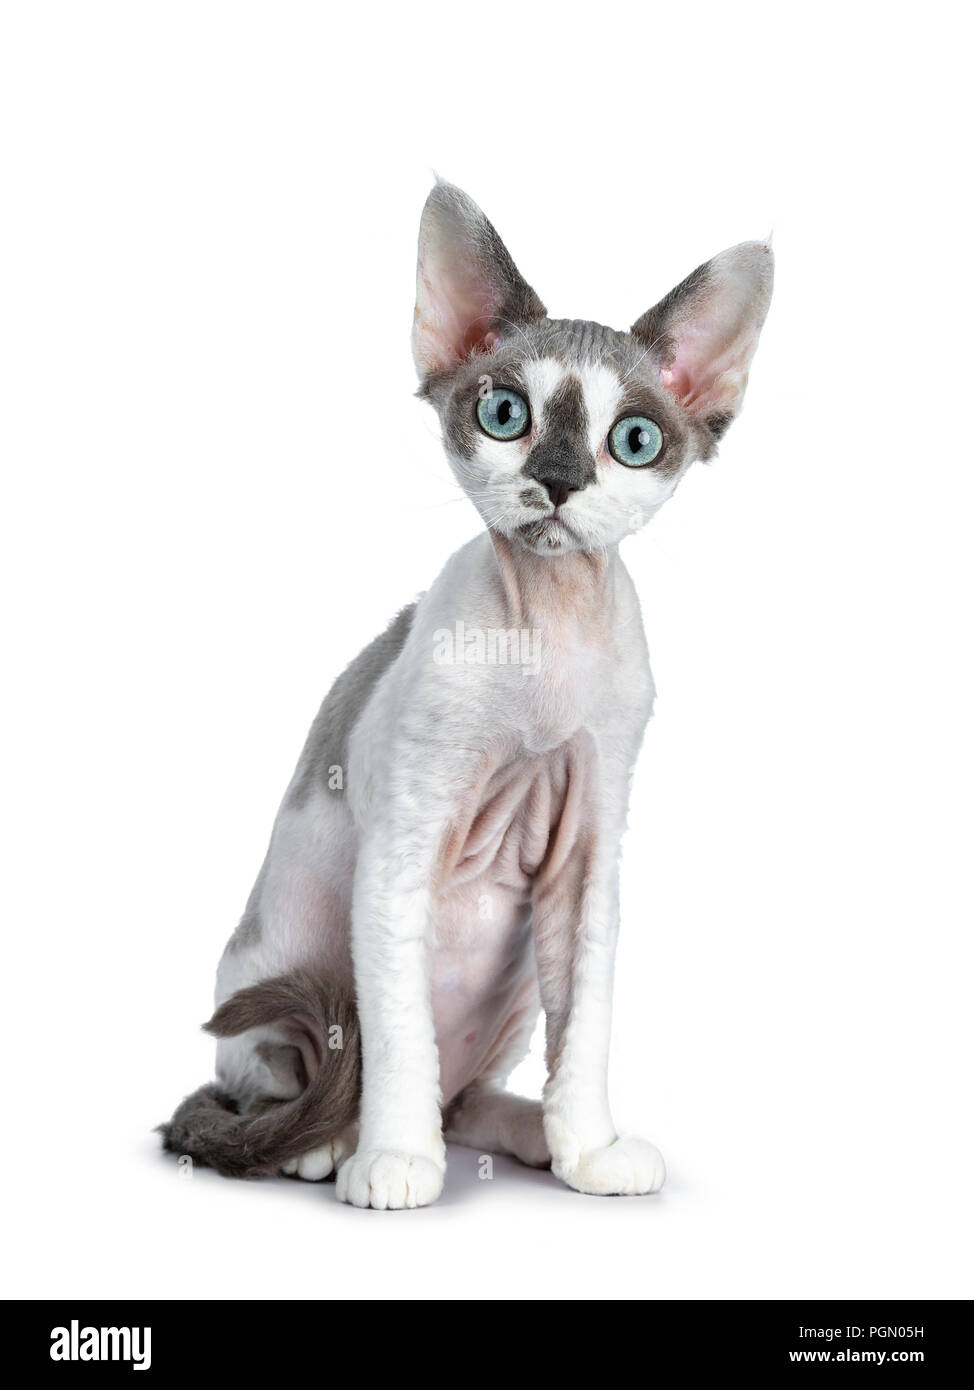 Adorabili tonkanese blue point con bianco Devon Rex gattino ragazza seduta un po' inclinato vista frontale, isolata su uno sfondo bianco guardando dritto Foto Stock